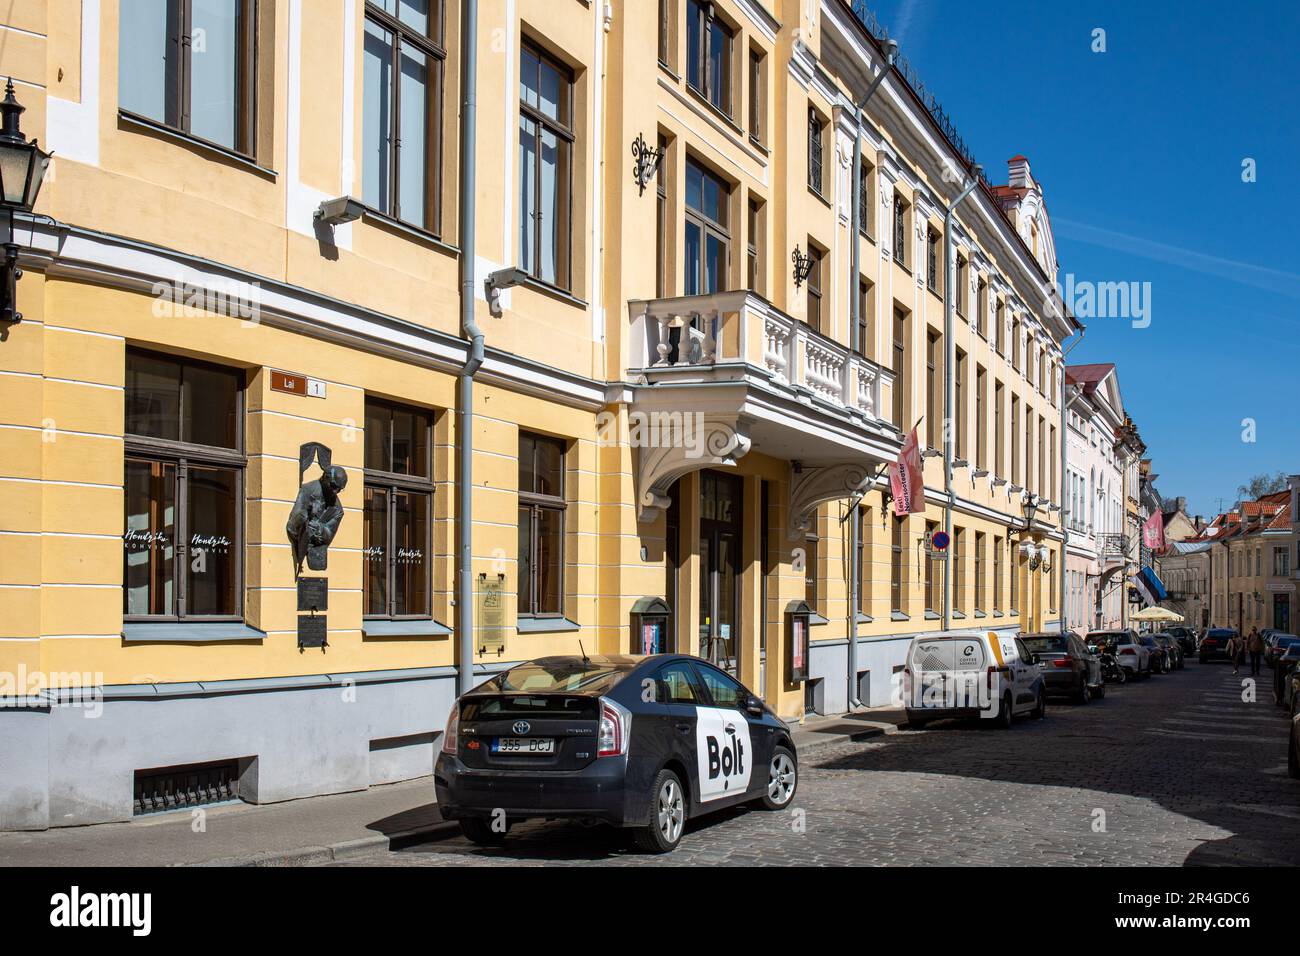 Lai street view in Vanalinn, the old town of Tallinn, Estonia Stock Photo